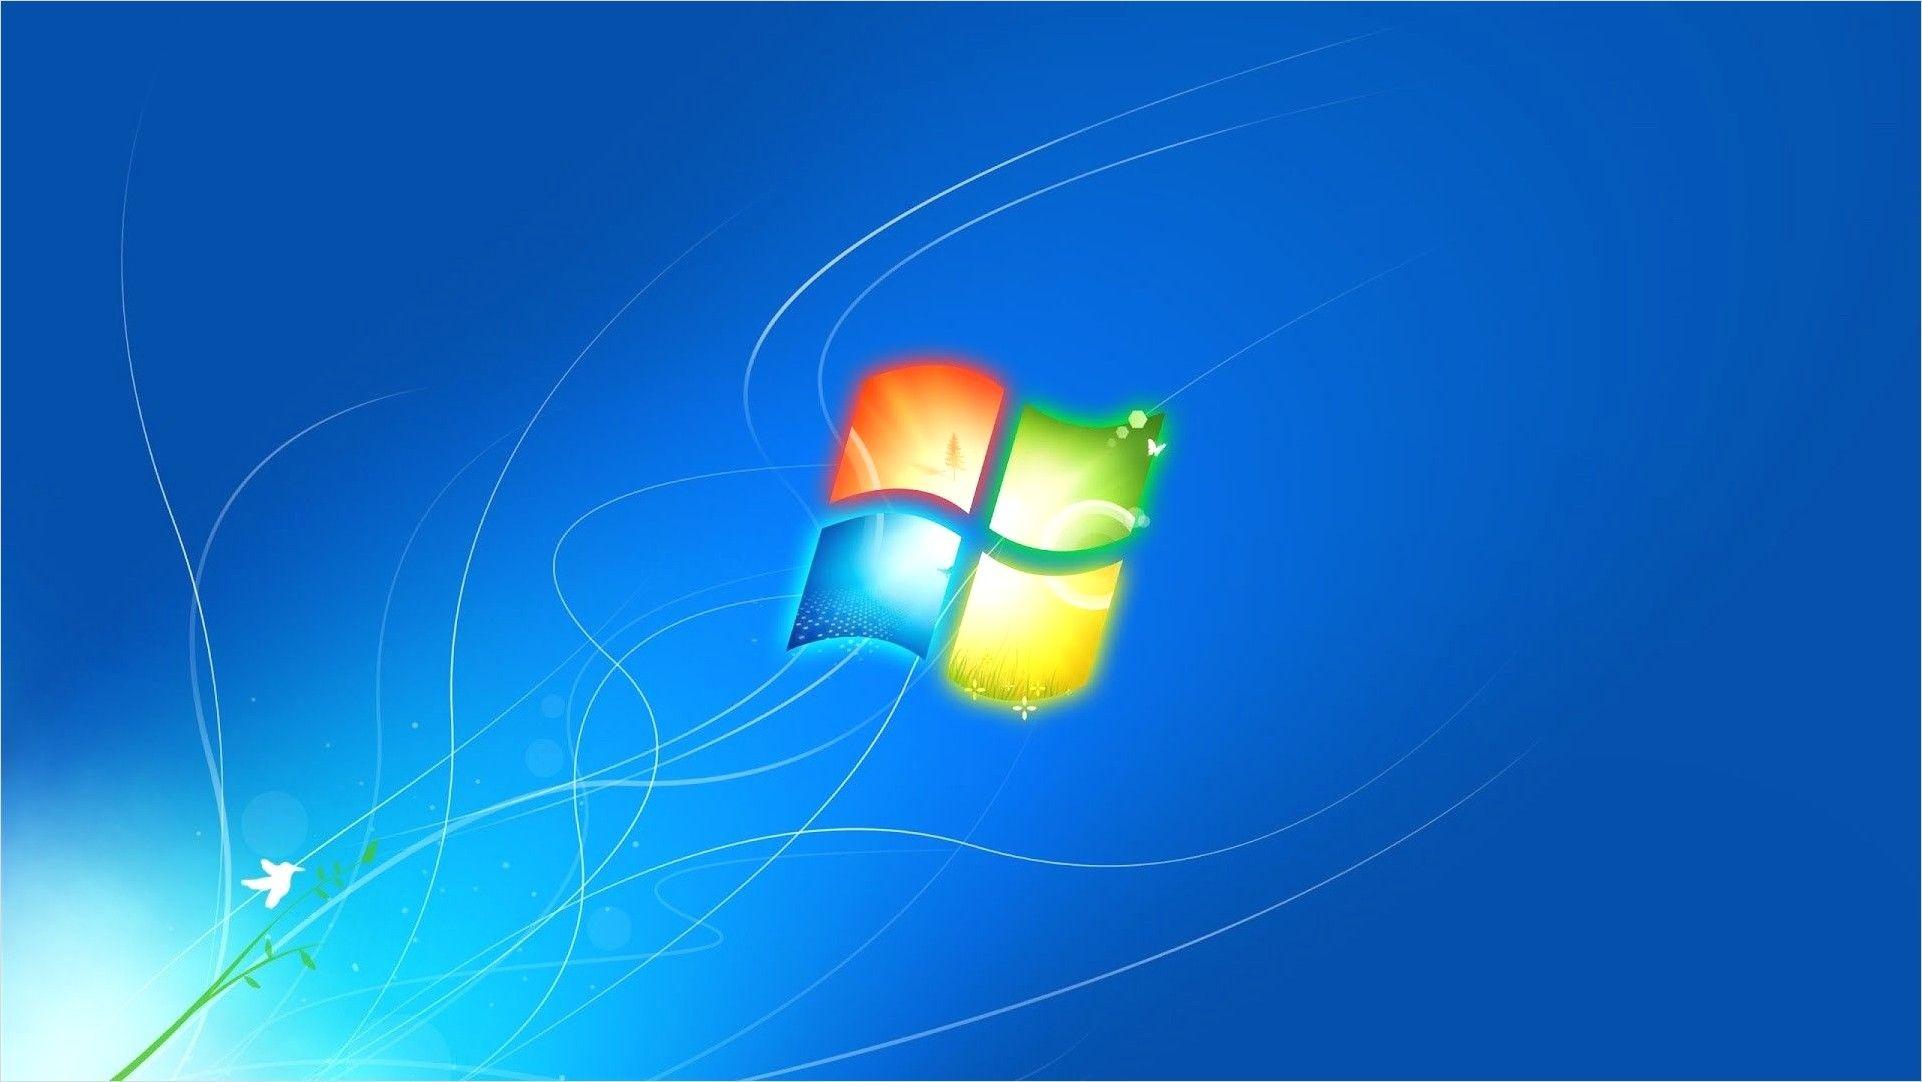 Hình nền khóa màn hình Windows 7 miễn phí sẽ mang lại cho bạn những trải nghiệm tuyệt vời nhất. Bạn có thể lựa chọn các hình nền khóa màn hình tuyệt đẹp để trang trí cho phong cách làm việc của mình. Những tác phẩm nghệ thuật độc đáo và tinh tế này sẽ giúp bạn tạo ra một không gian làm việc thoải mái và đầy cảm hứng!